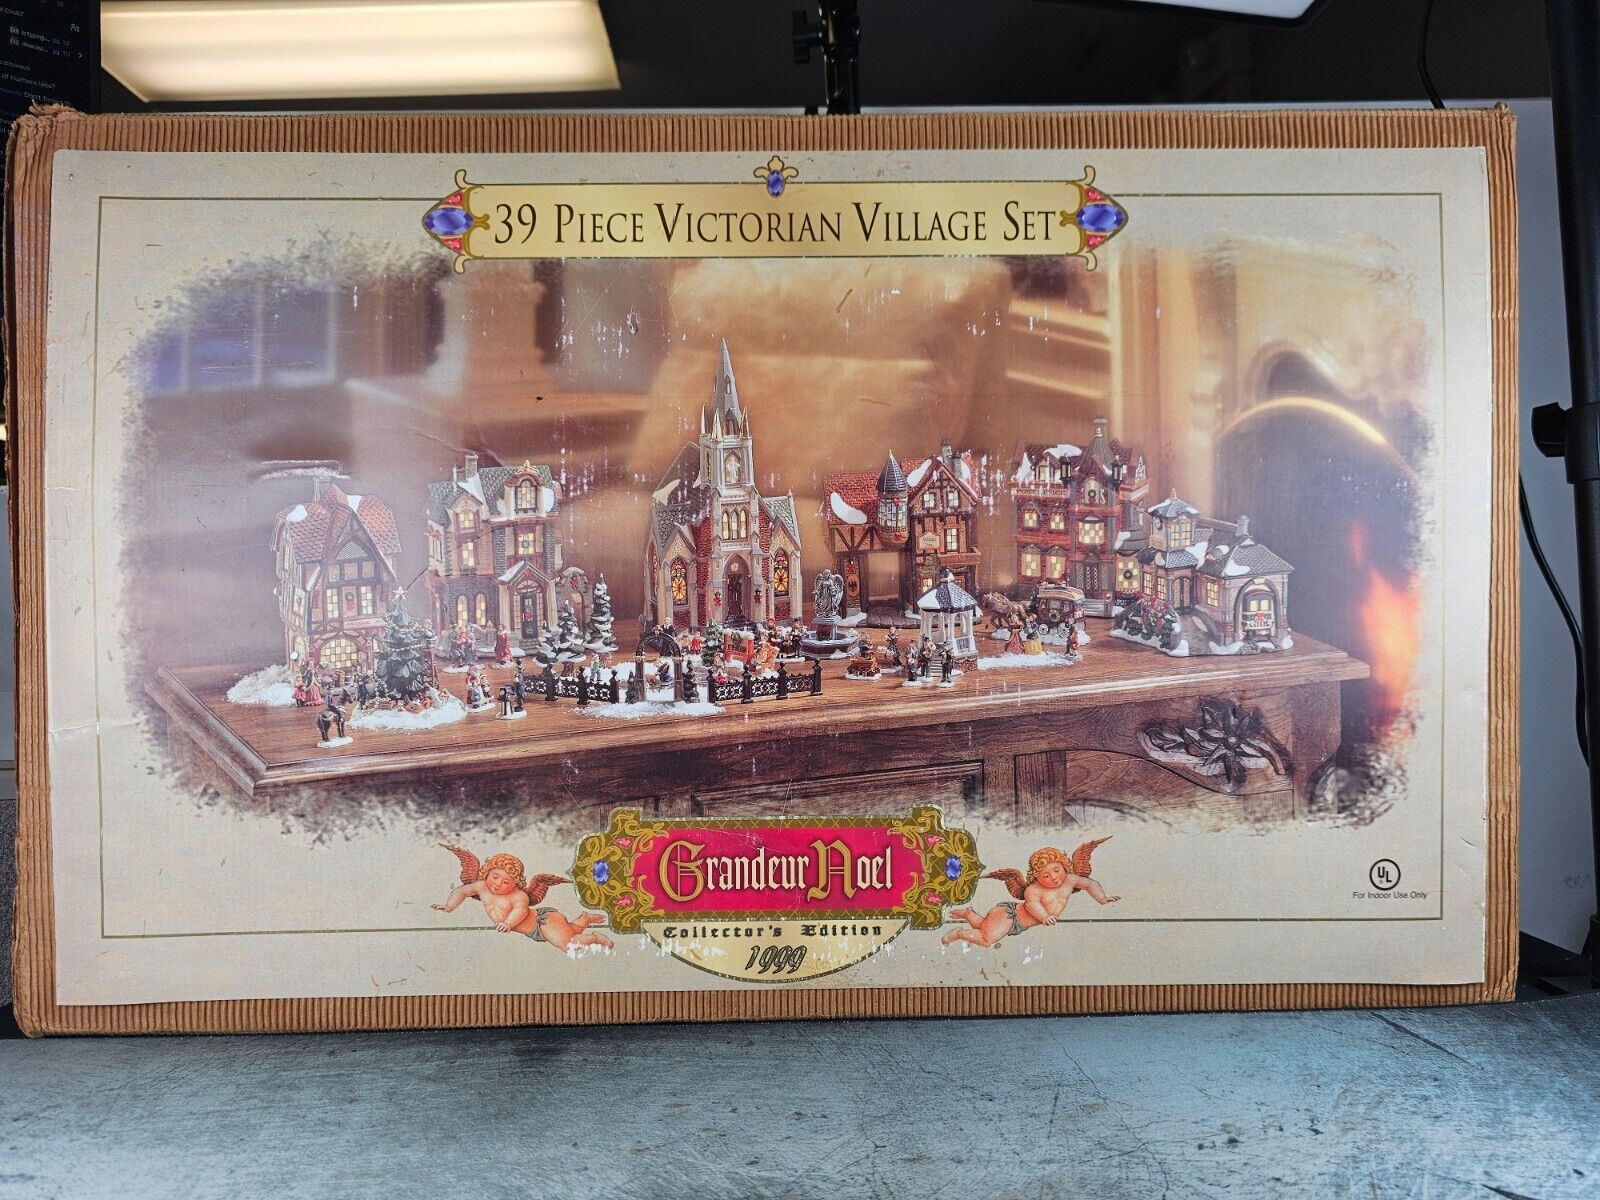 39 Piece Victorian Village Set-Grandeur Noel - Collector's Edition 1999